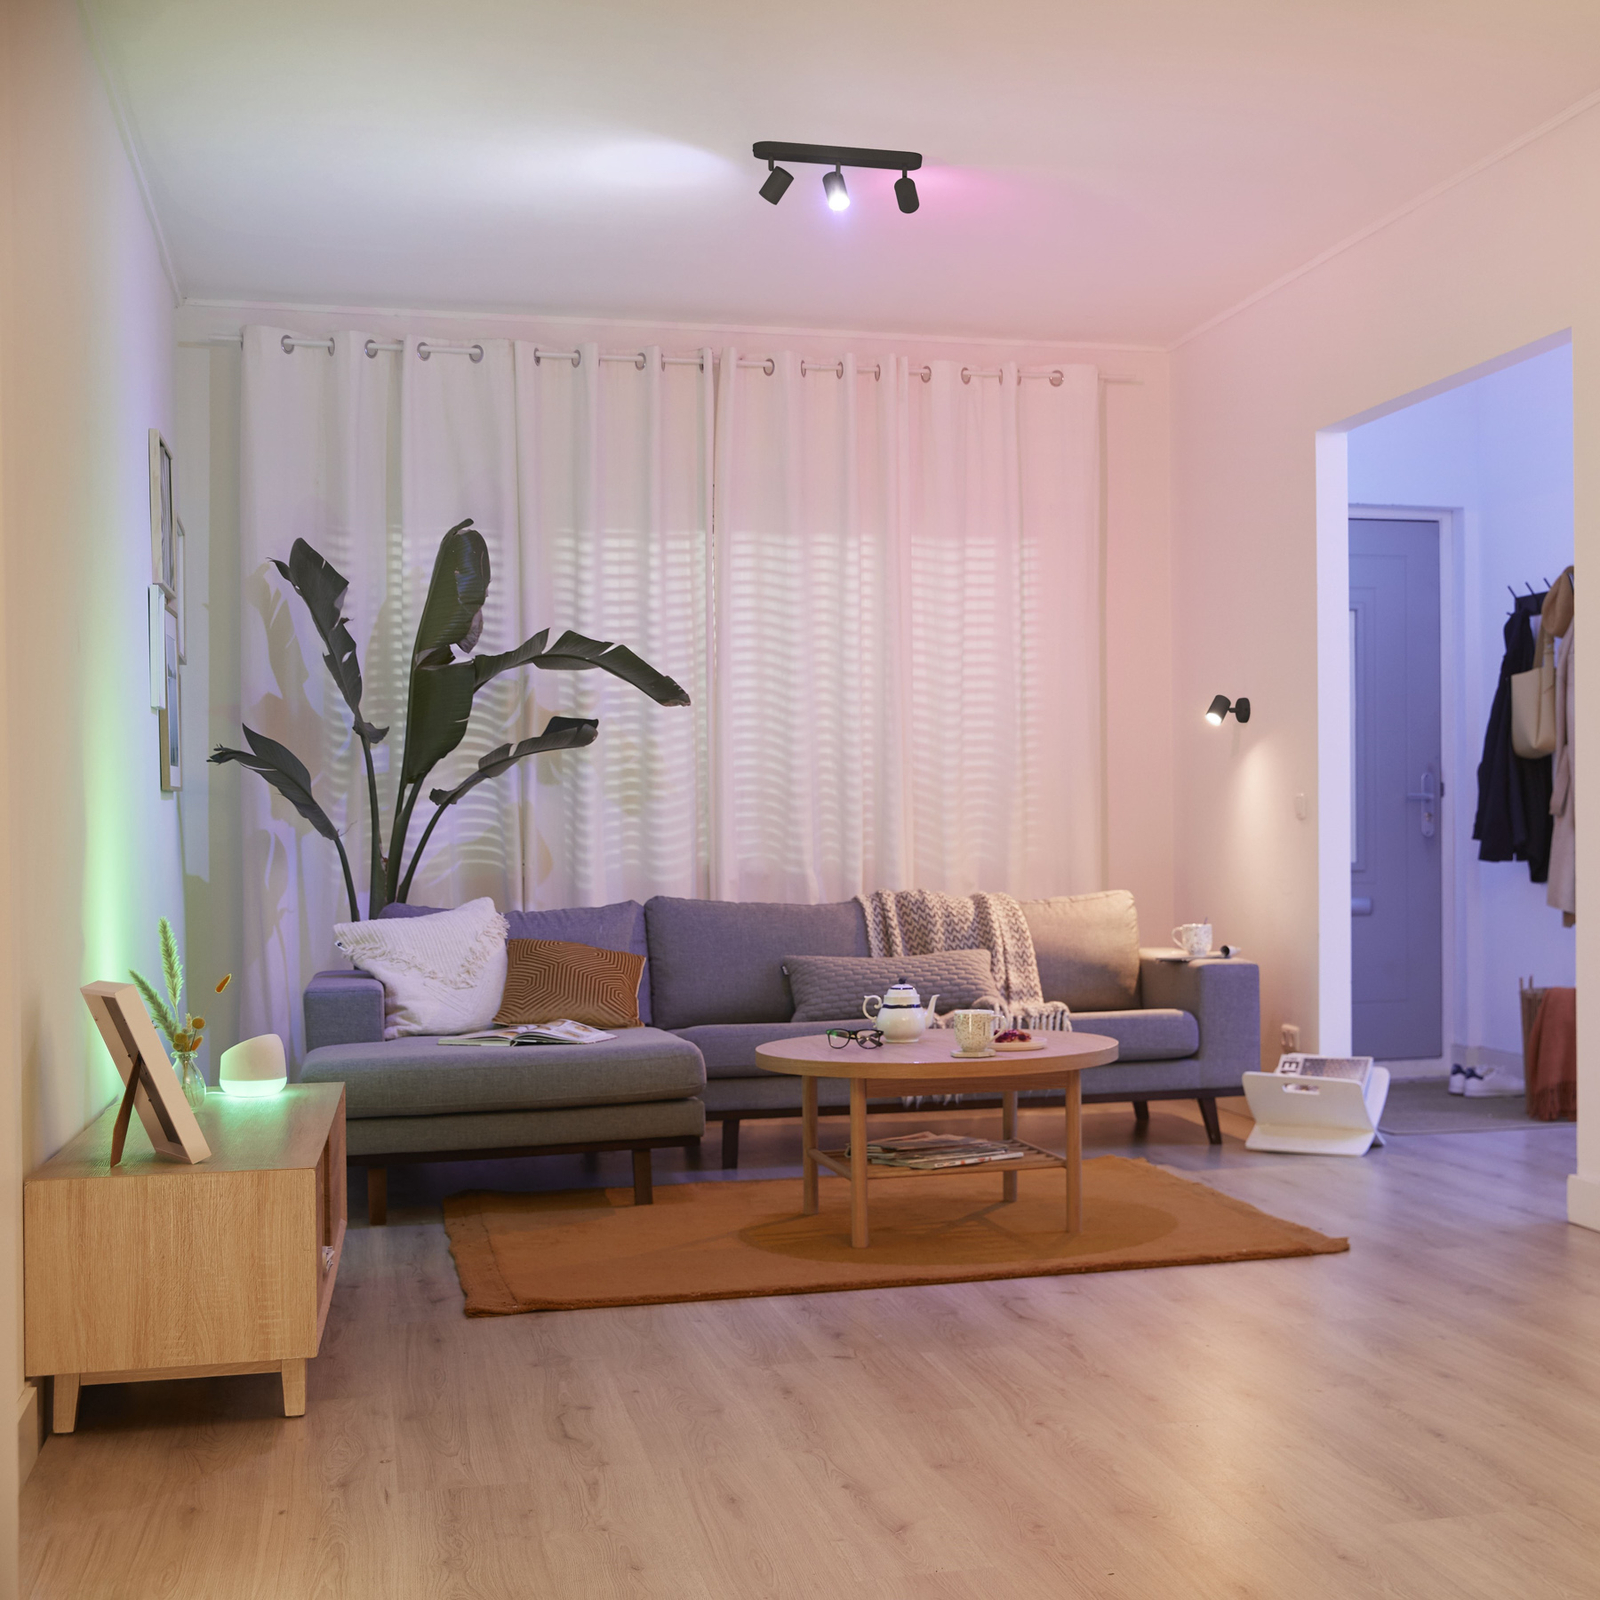 WiZ Imageo LED-strålkastare med 3 RGB-lampor, svart